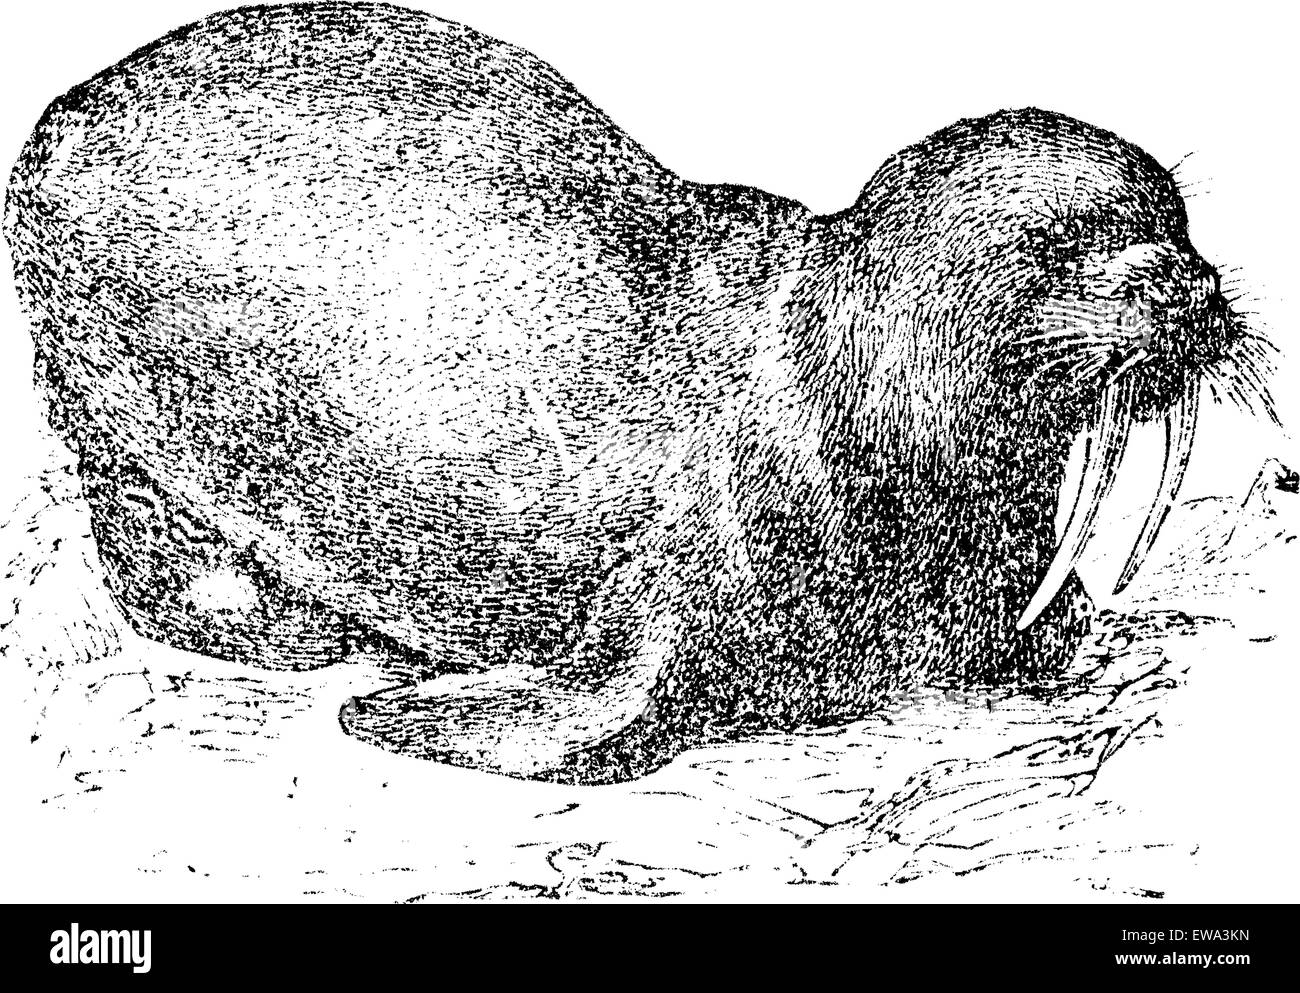 Walross oder Seepferdchen, graviert Vintage Illustration. Trousset Enzyklopädie (1886-1891). Stock Vektor